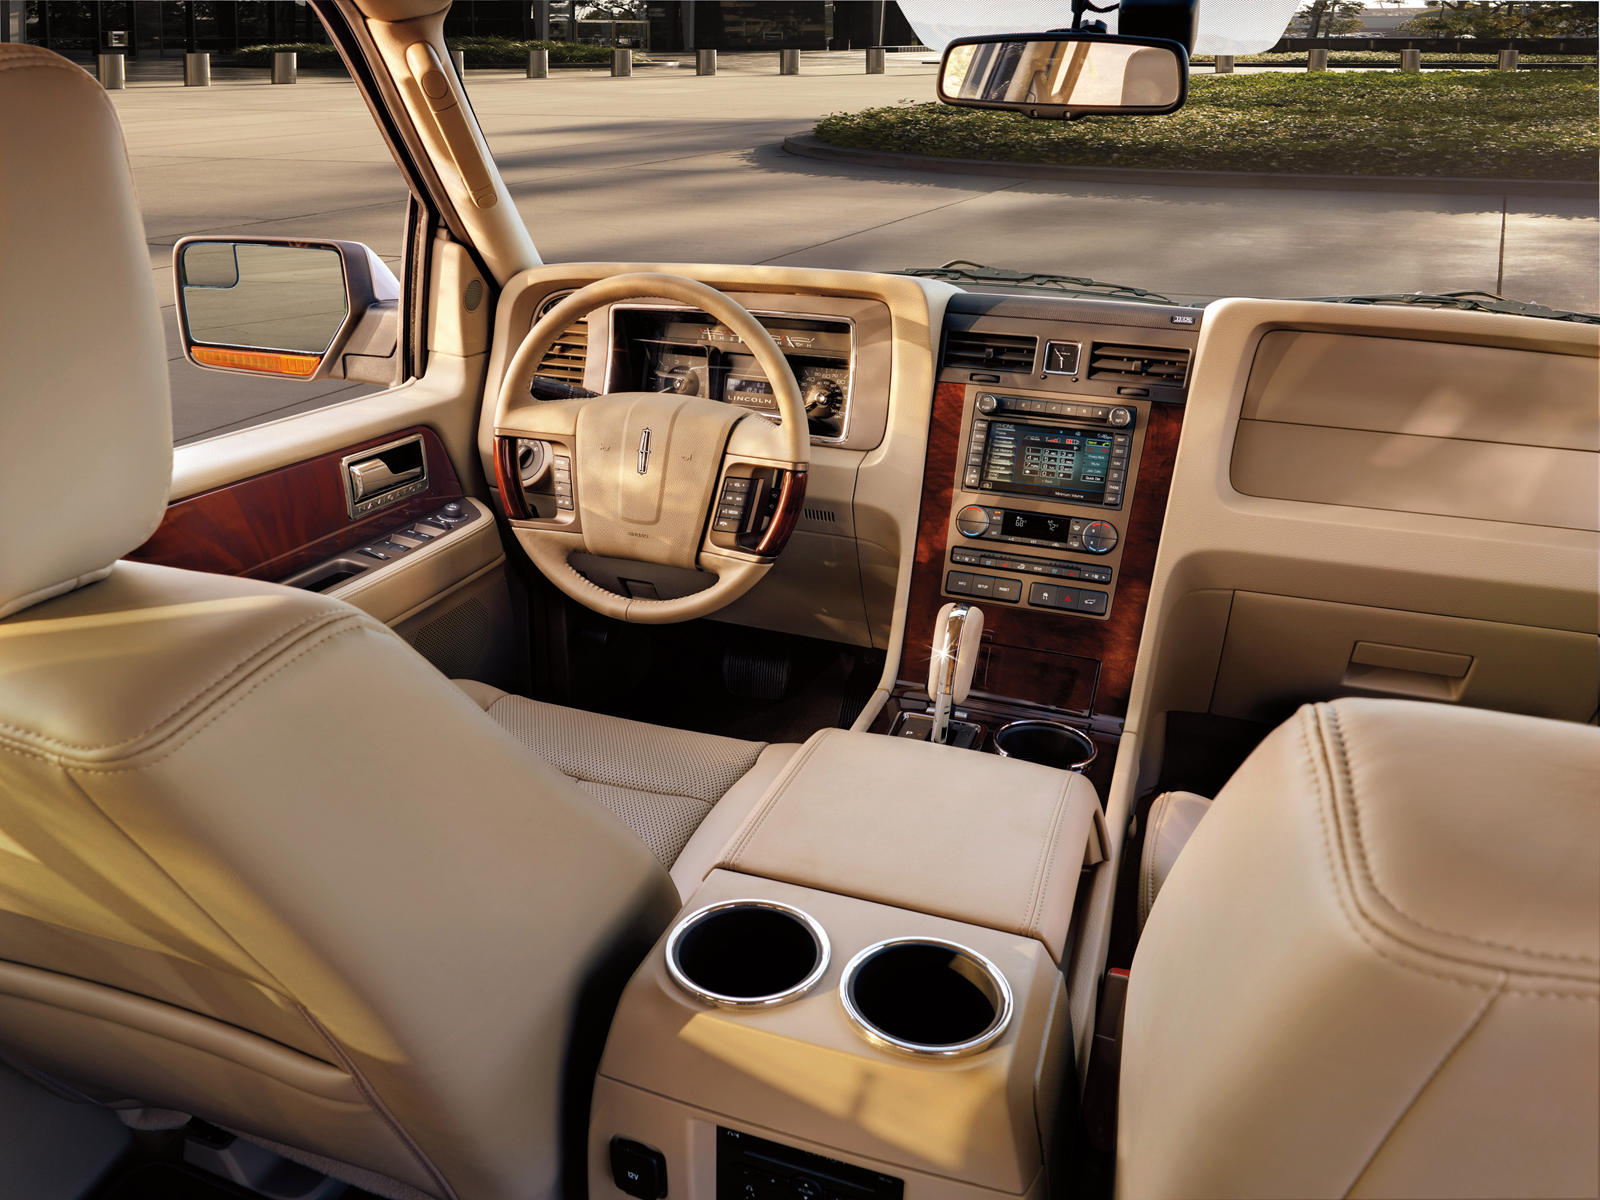 2009 Lincoln Navigator Interior Photos | CarBuzz